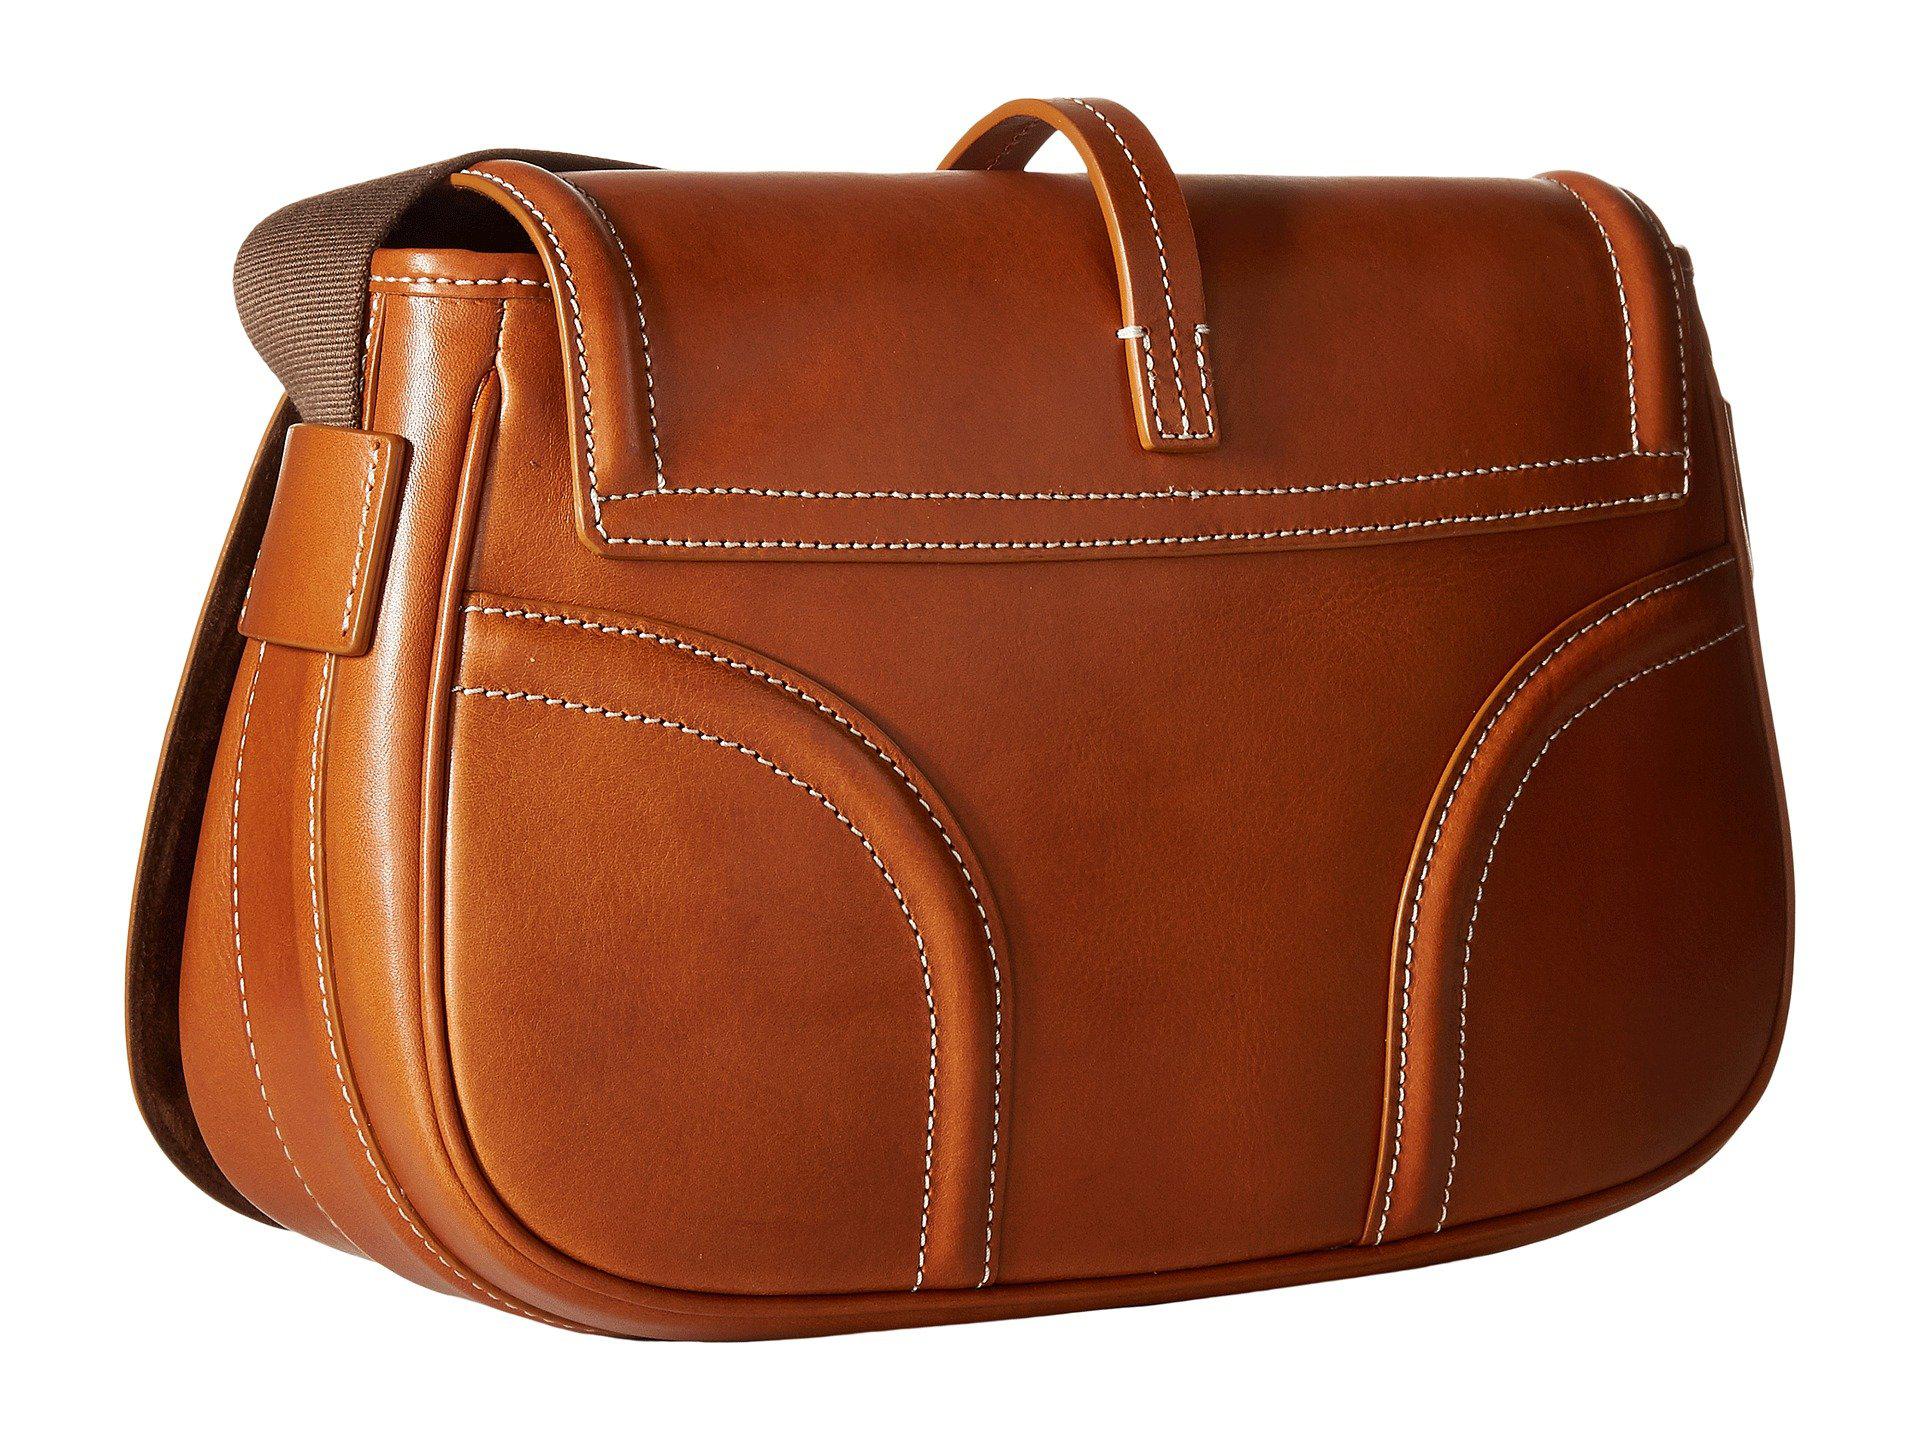 Dooney and Bourke Handbags - Macy's  Louis vuitton handbags prices, Dooney  bourke handbags, Purses